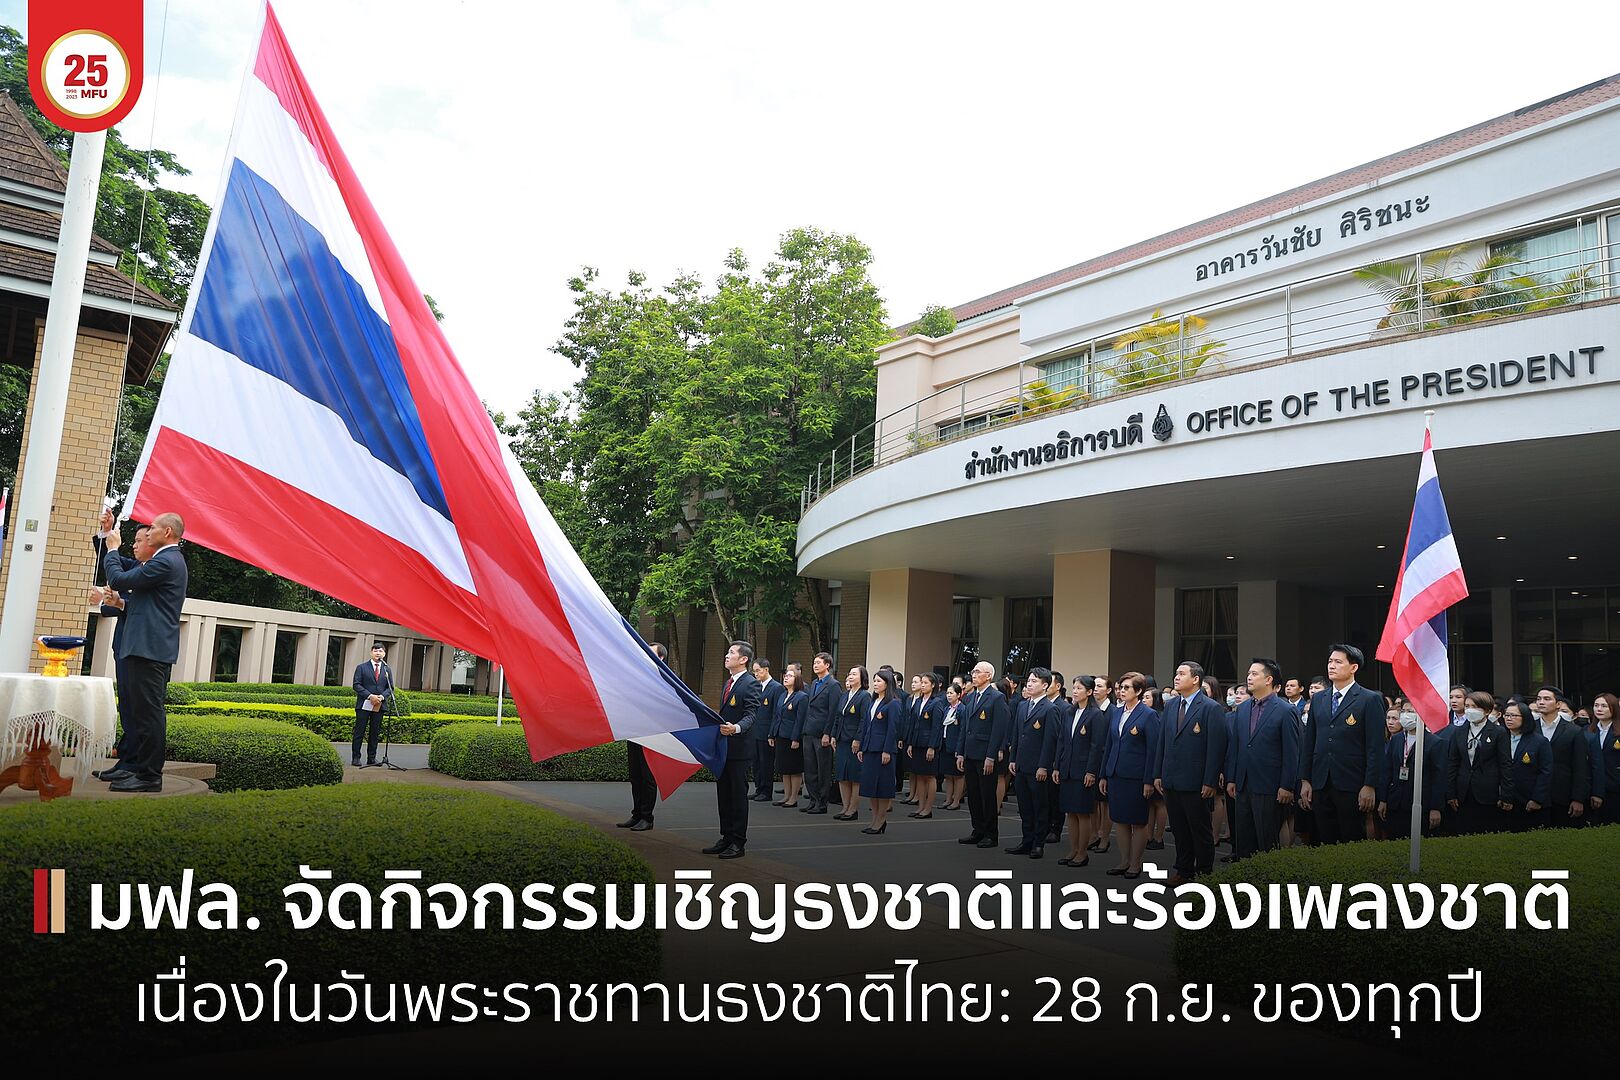 มฟล. จัดกิจกรรมเชิญธงชาติและร้องเพลงชาติ เนื่องในวันพระราชทานธงชาติไทย: 28 ก.ย. ของทุกปี